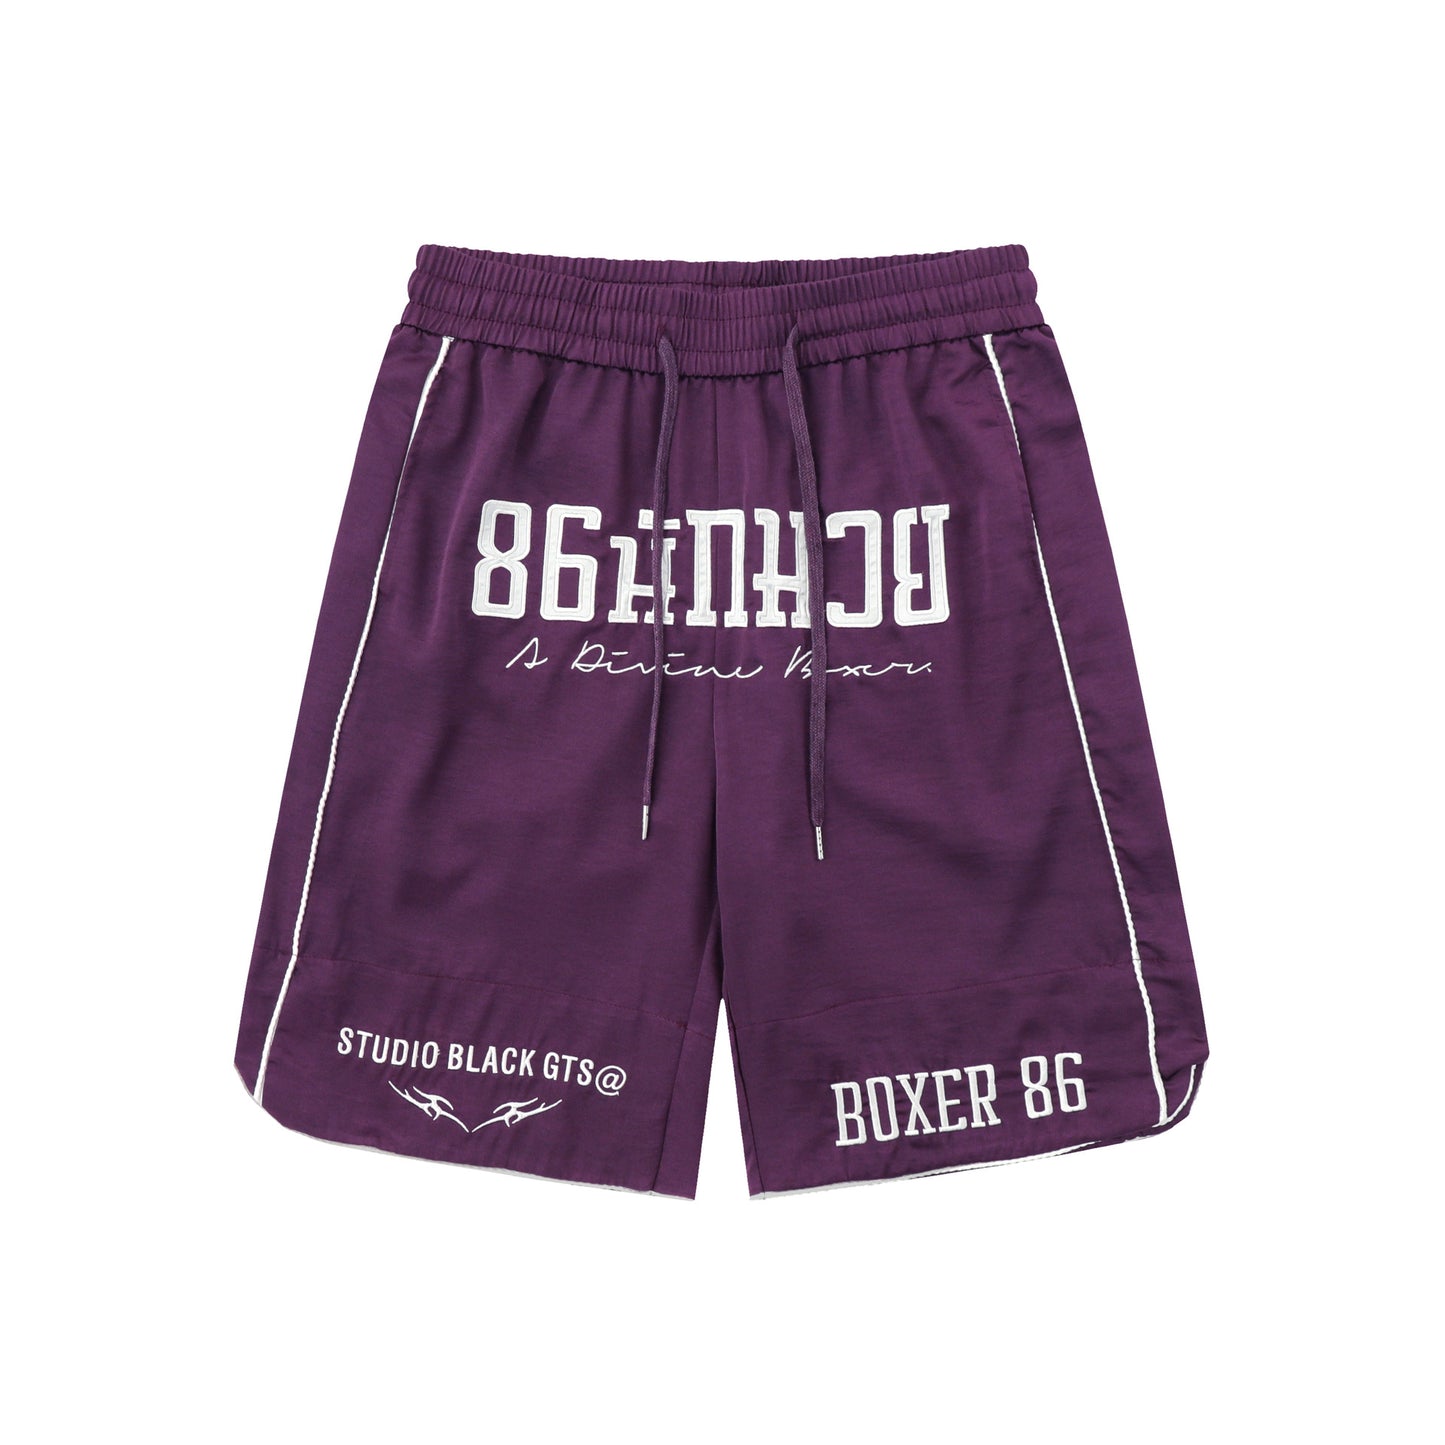 Haul™ Boxer86 Short